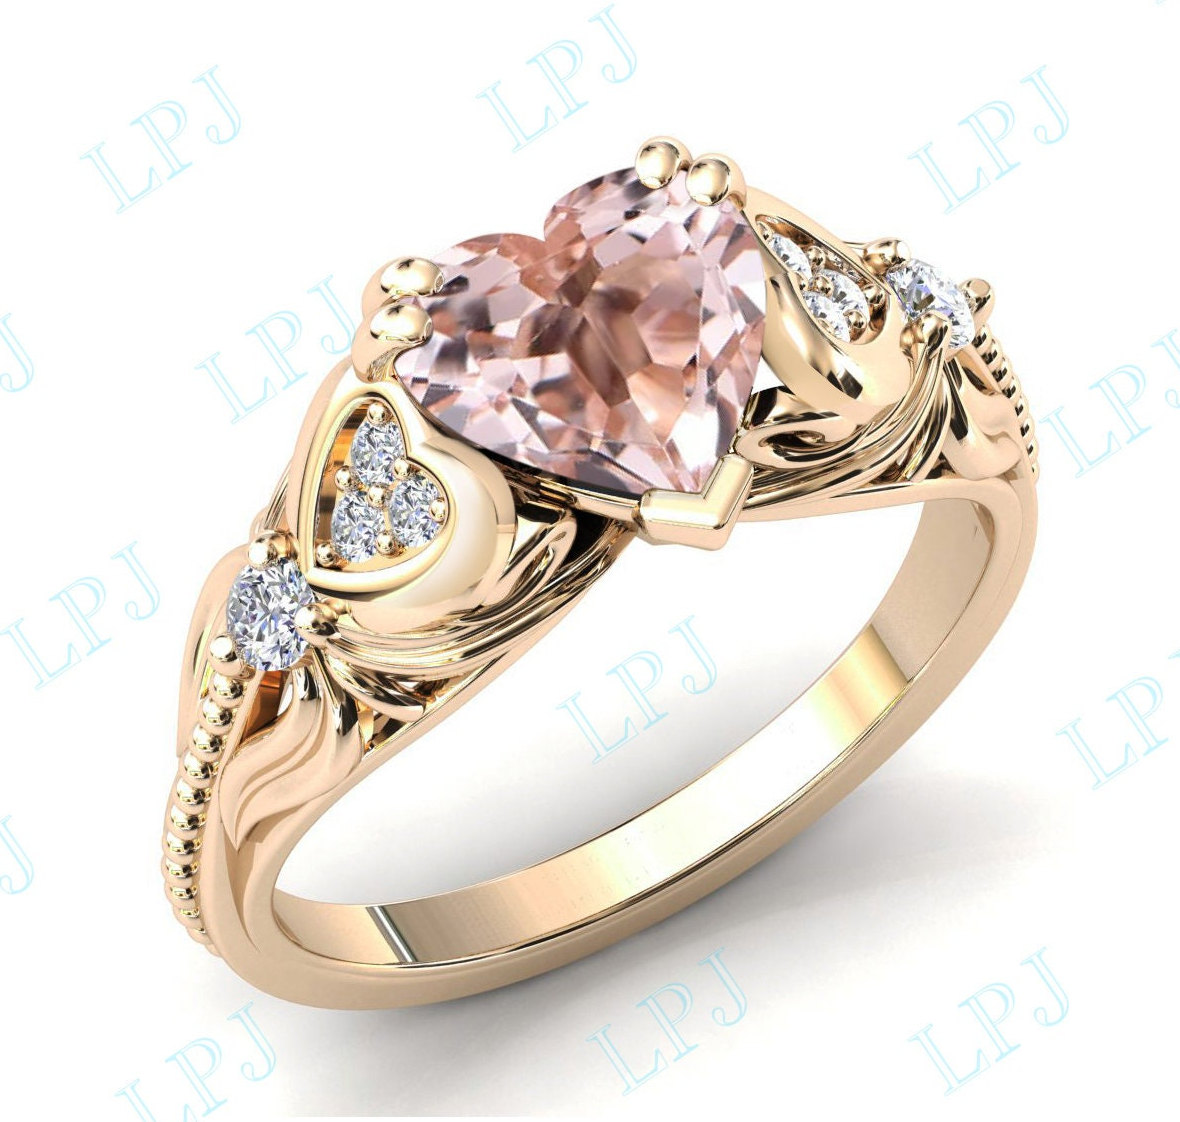 Herzform Morganit Verlobungsring Art Deco Hochzeit Ring Für Frauen Pfirsich Pink Versprechen von LiverpoolJewelry